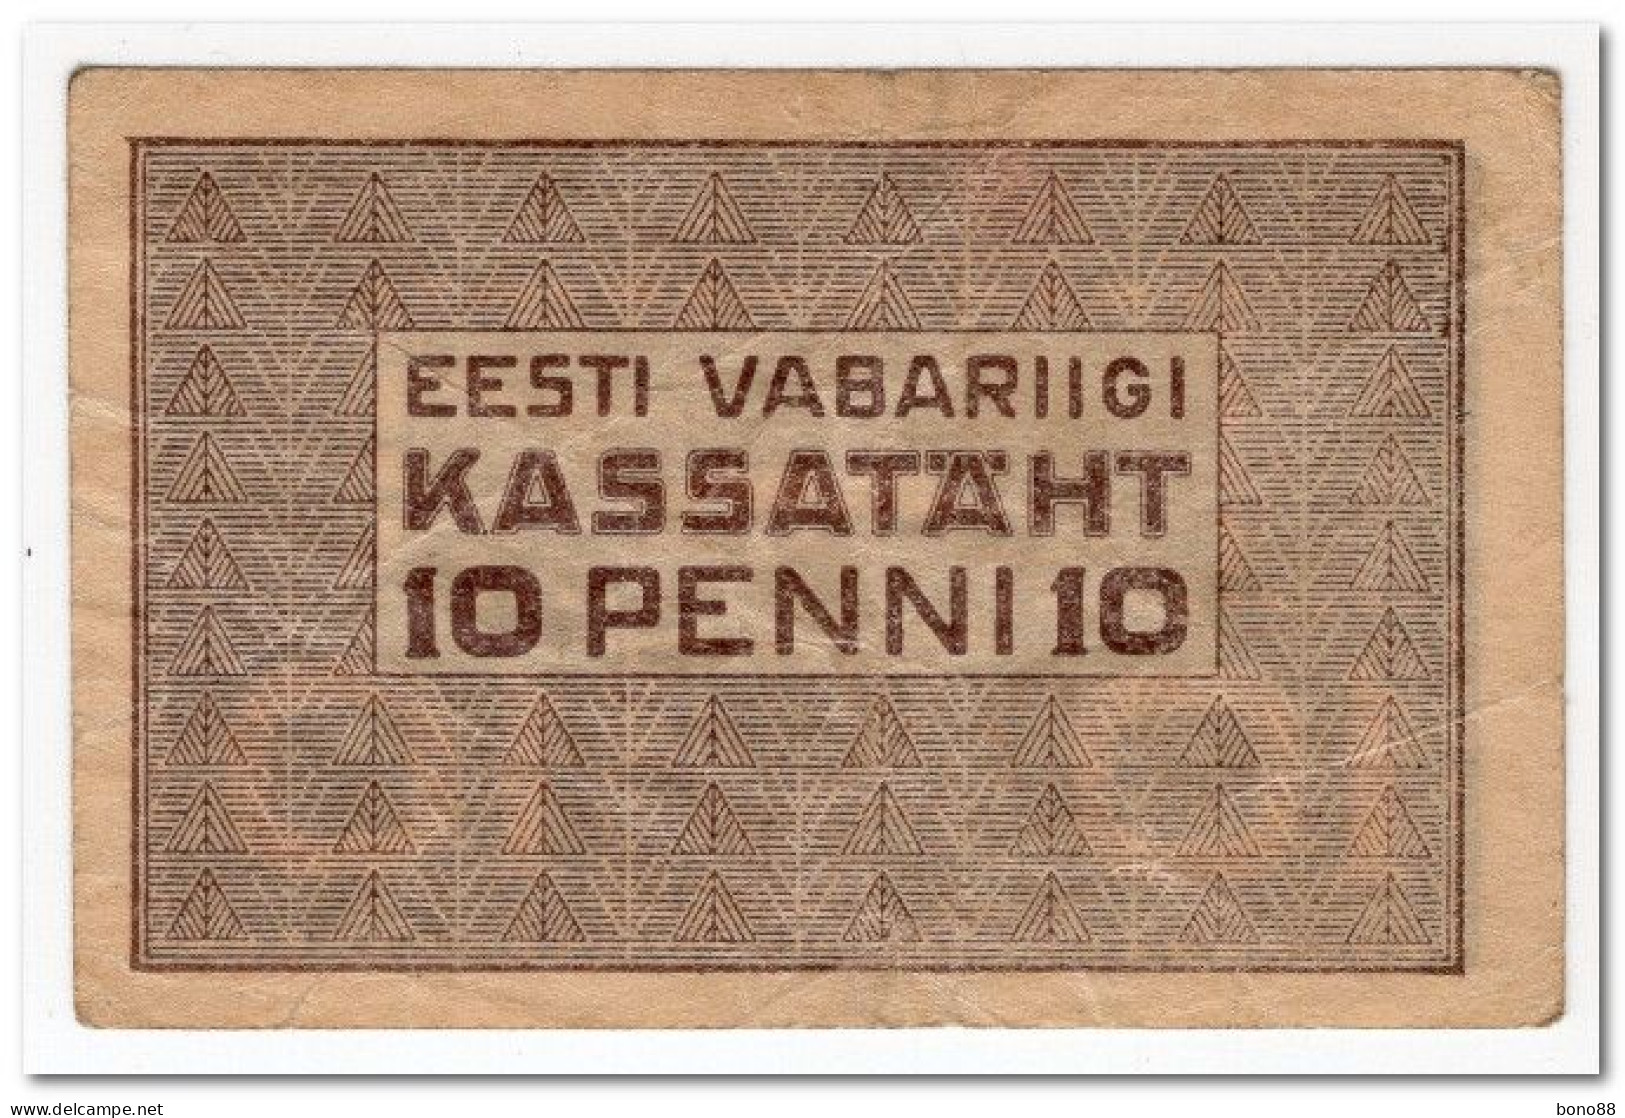 ESTONIA,10 PENNI,1919,P.40,VF - Estonia